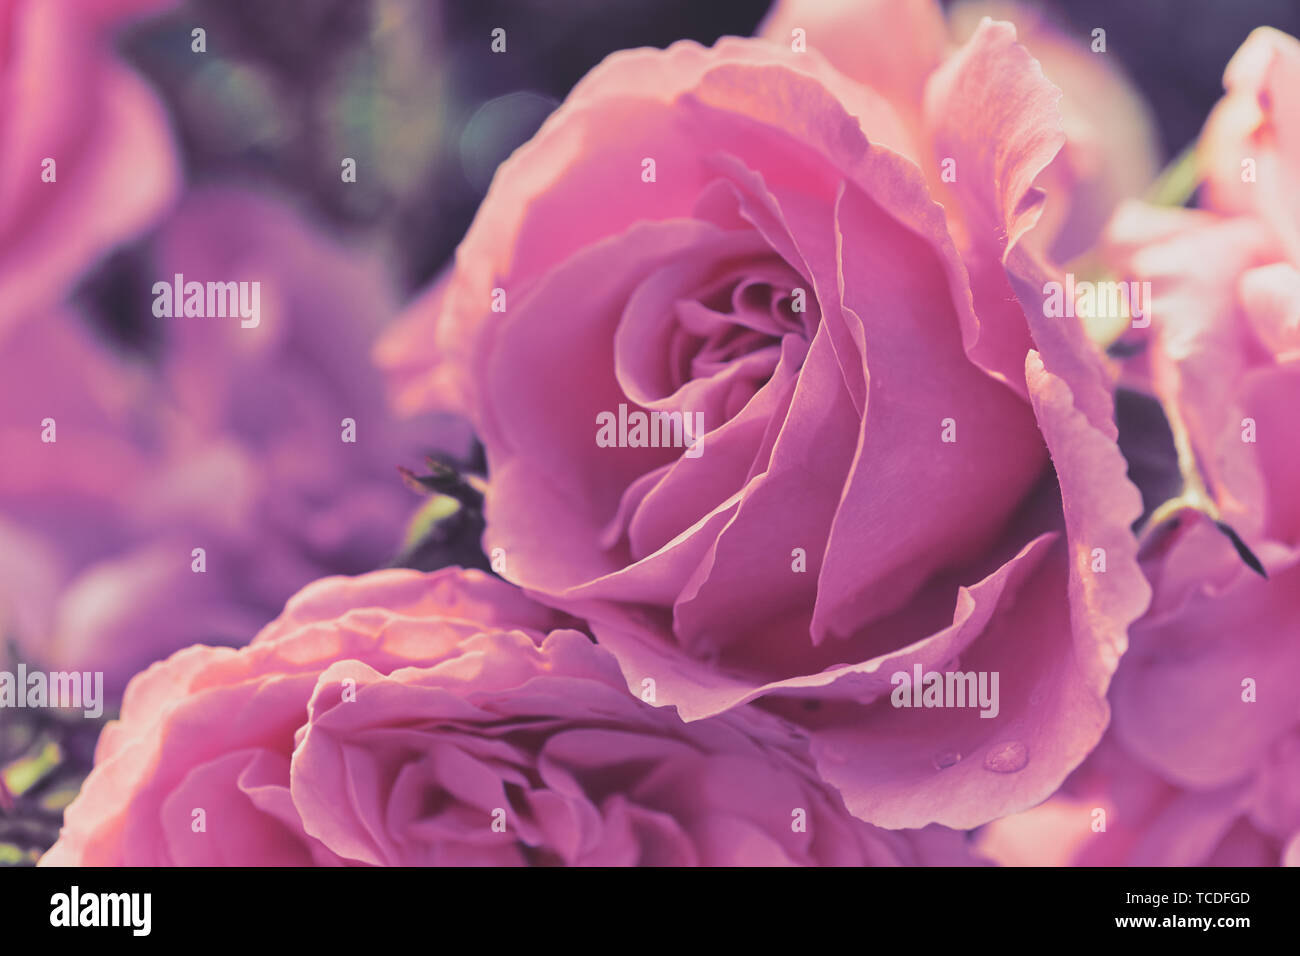 Macro photo couleur de roses dans un style doux comme image de fond ou de cartes de vœux Banque D'Images